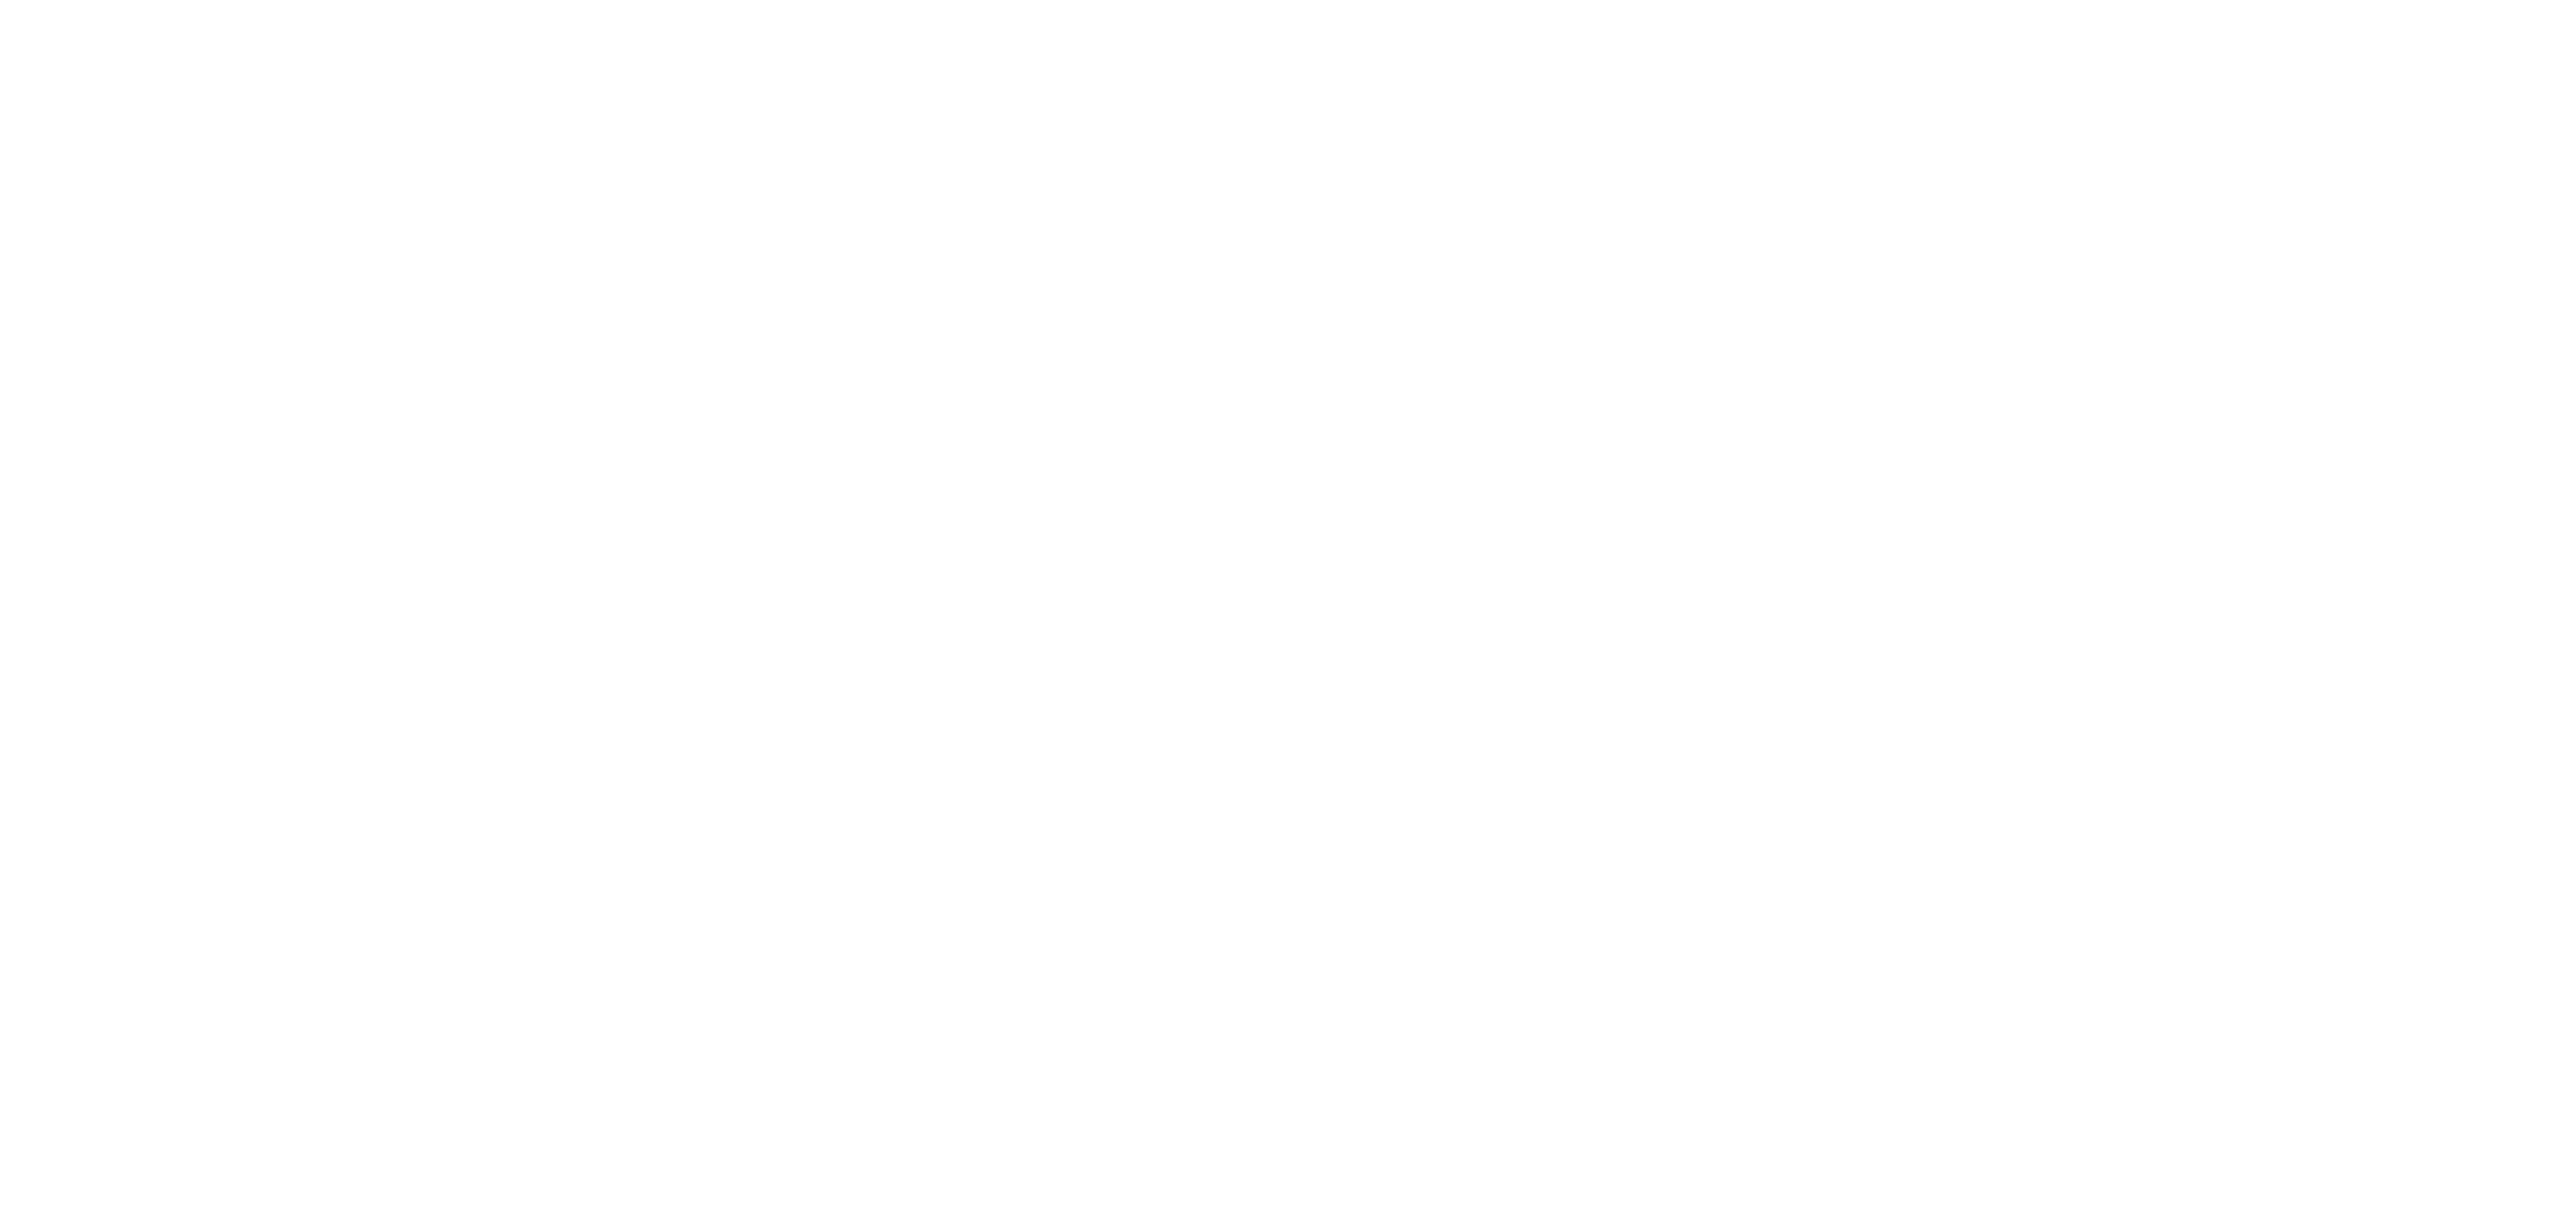 Isaac Voorn